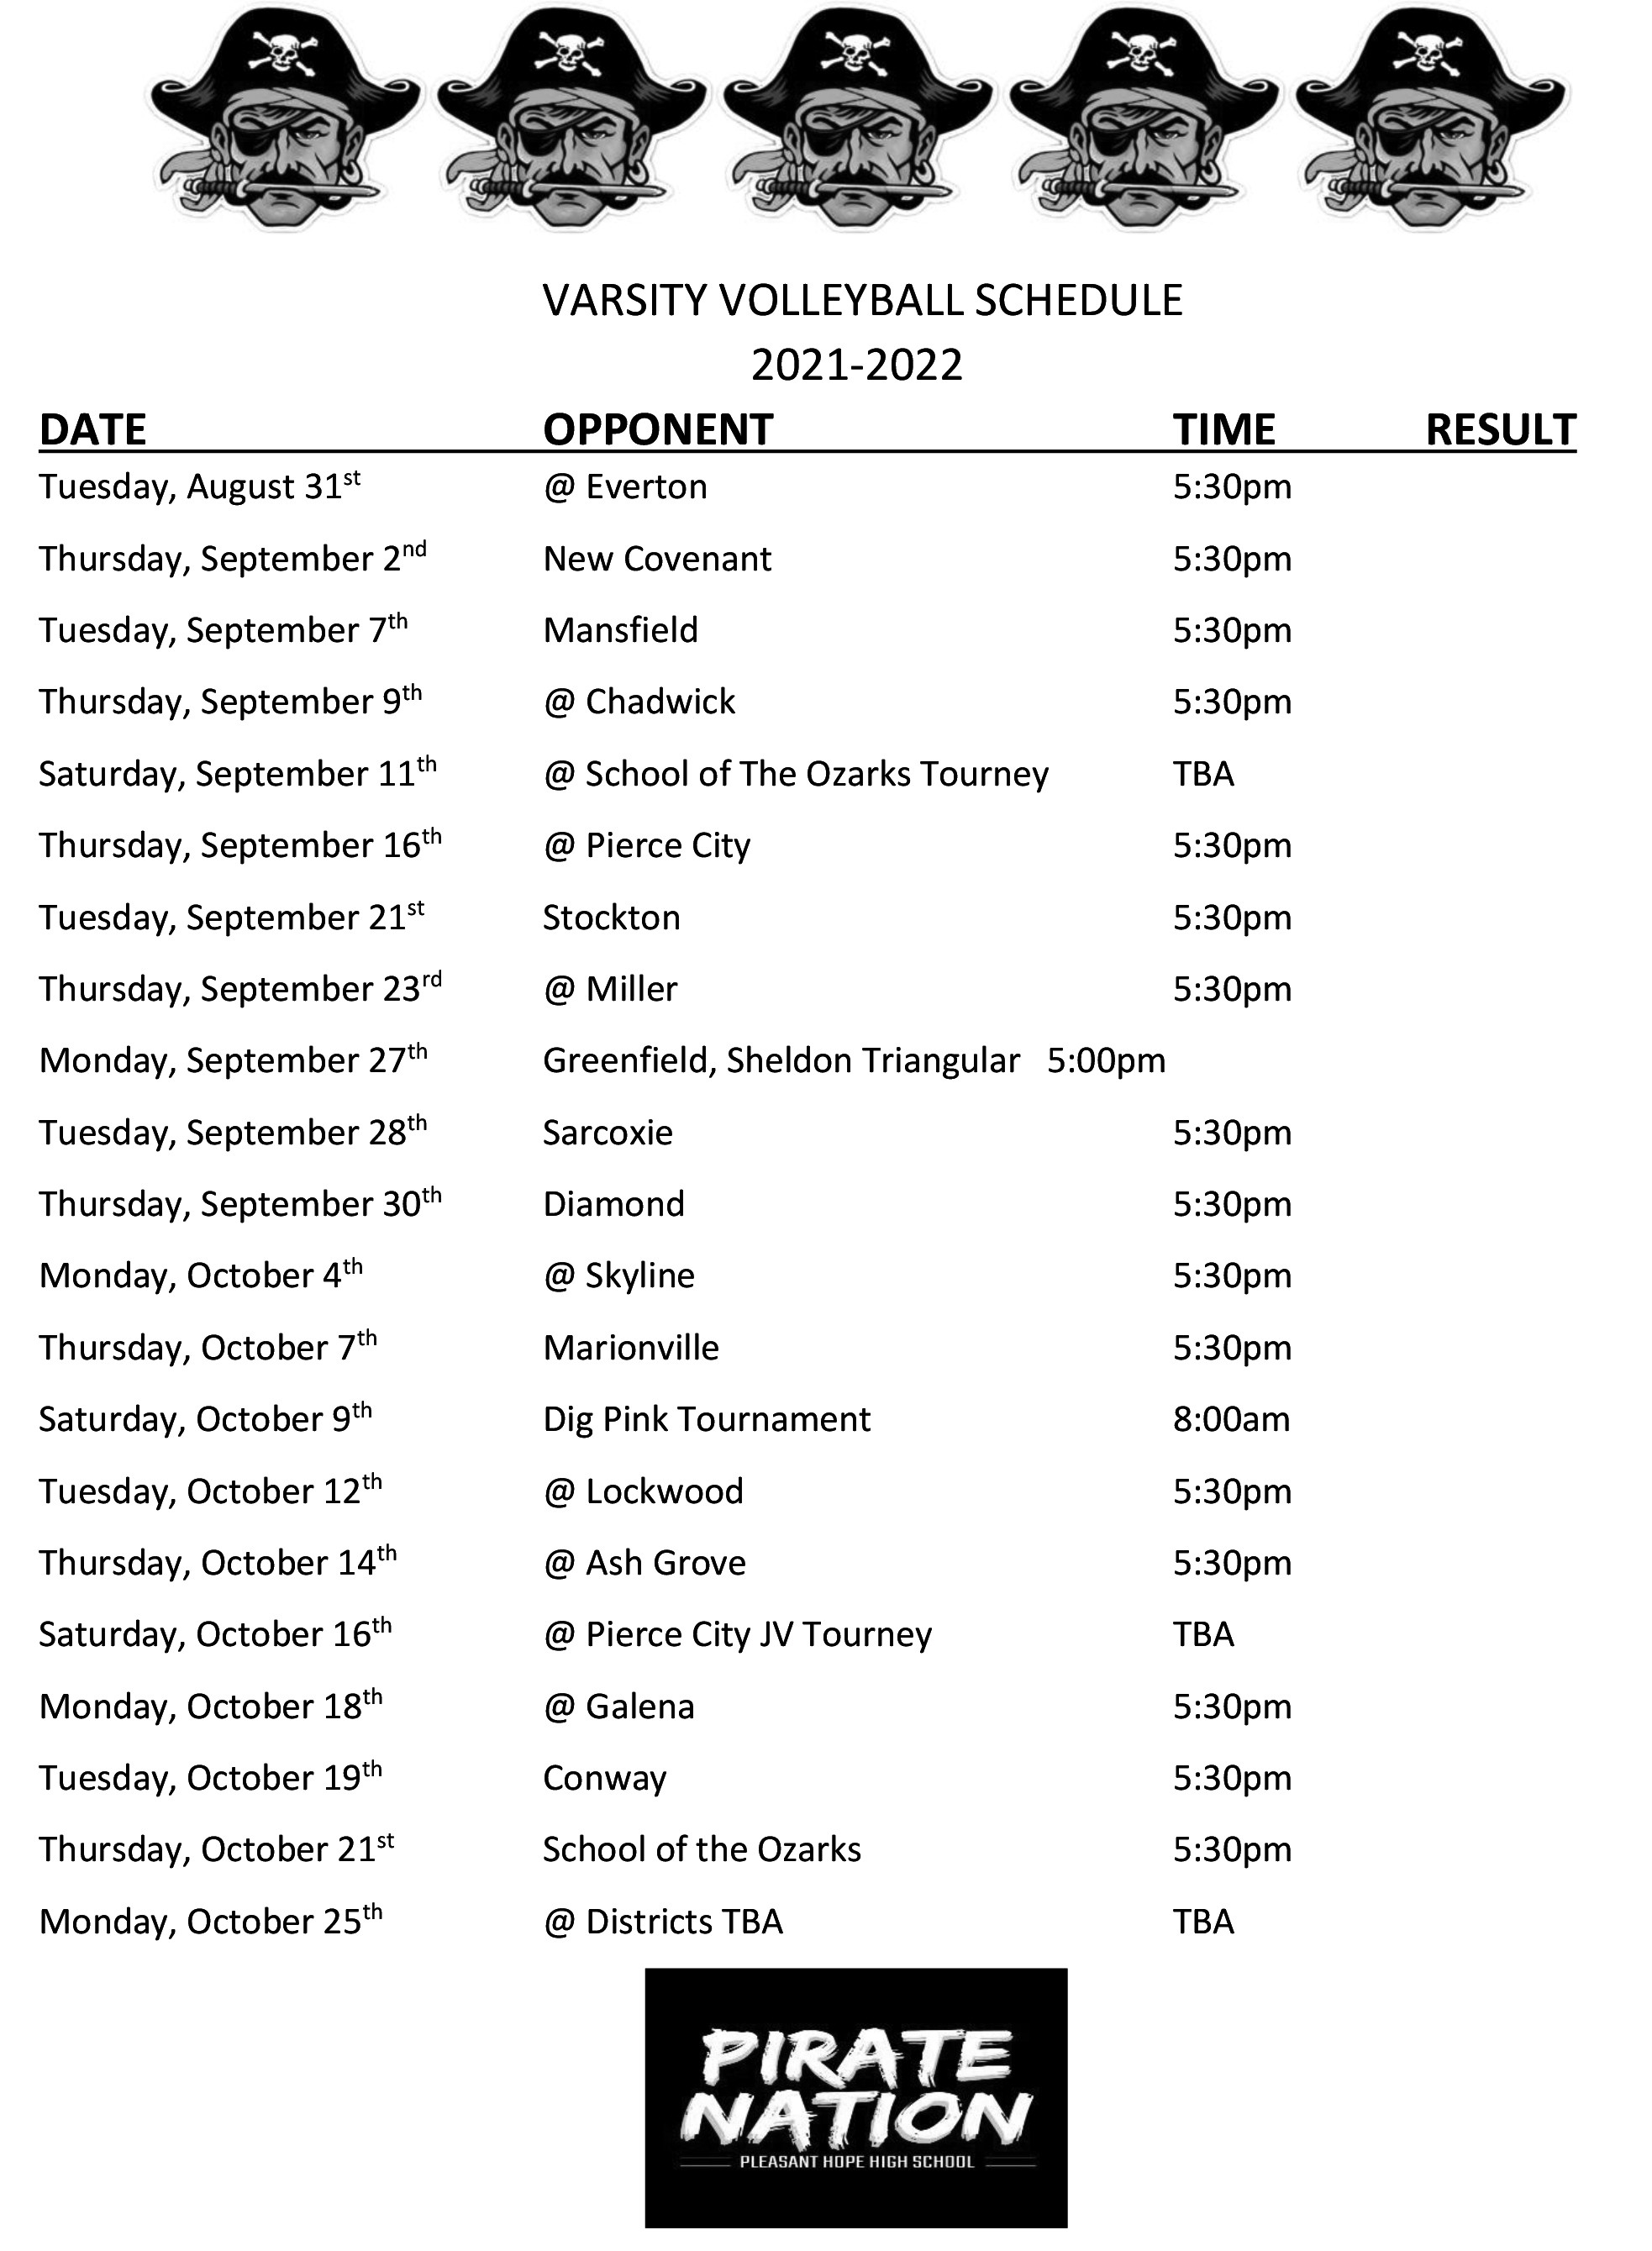 HS Volleyball Schedule